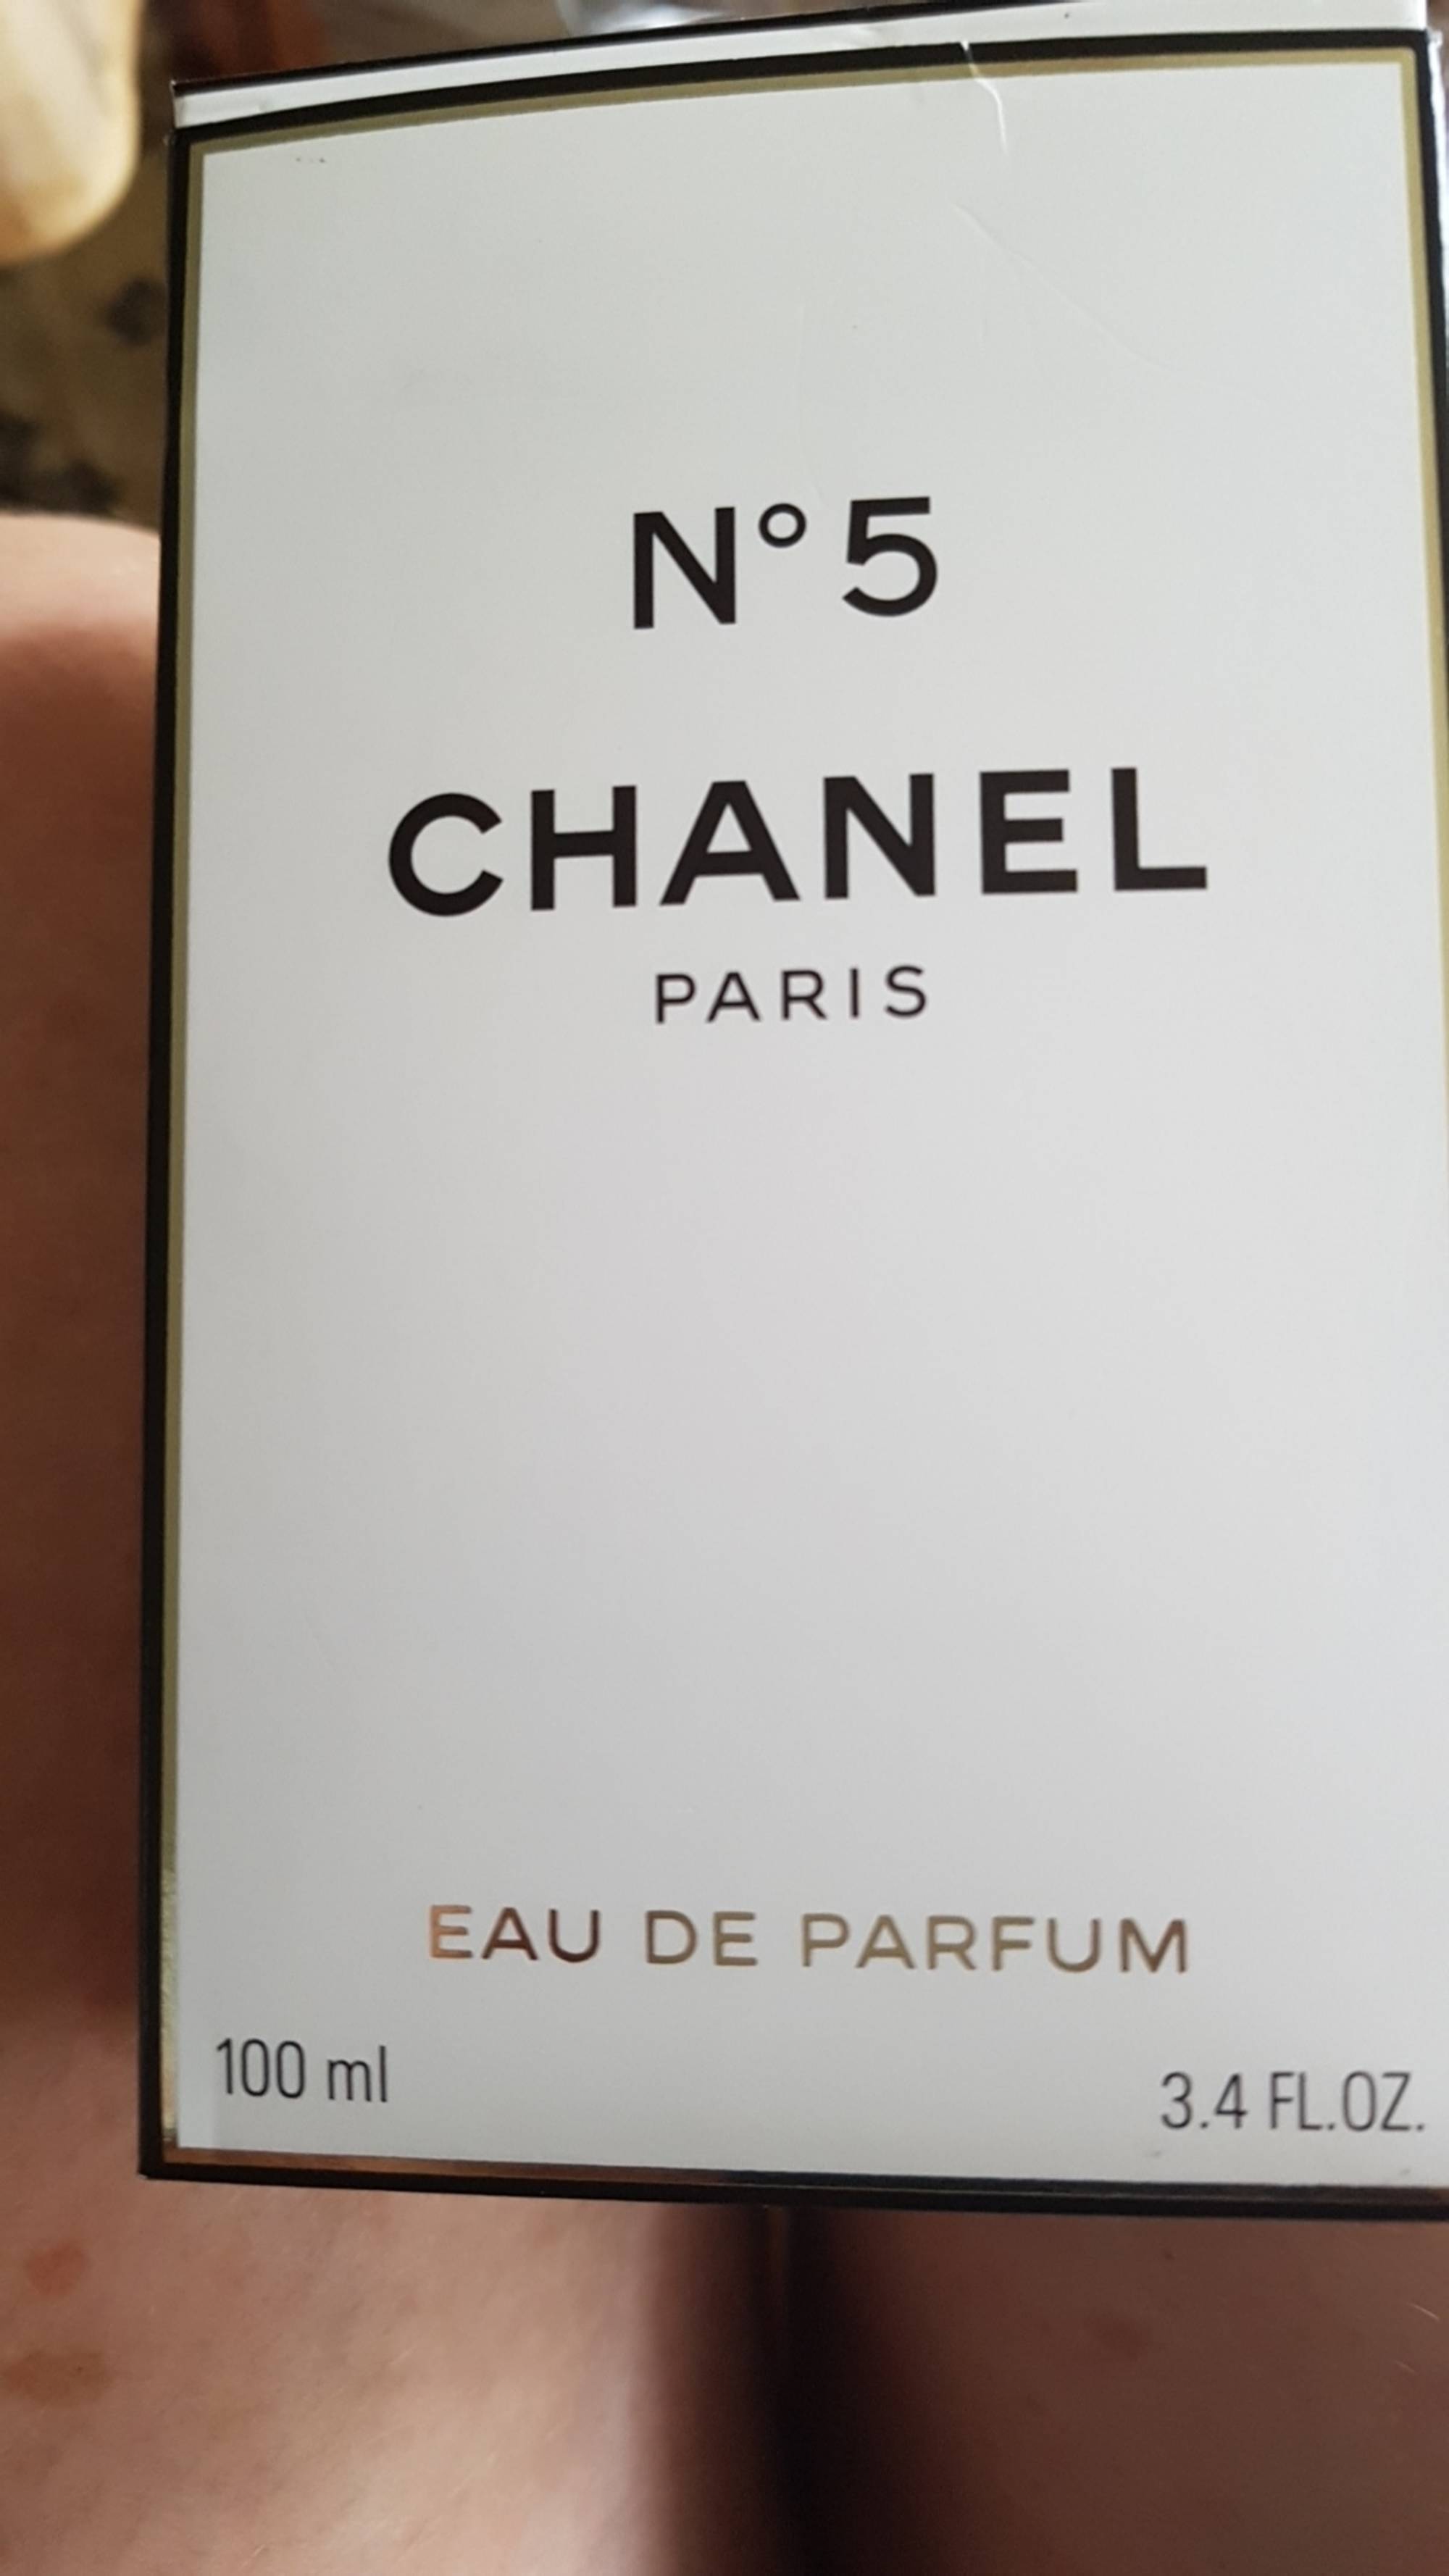 CHANEL - N° 5 eau de parfum